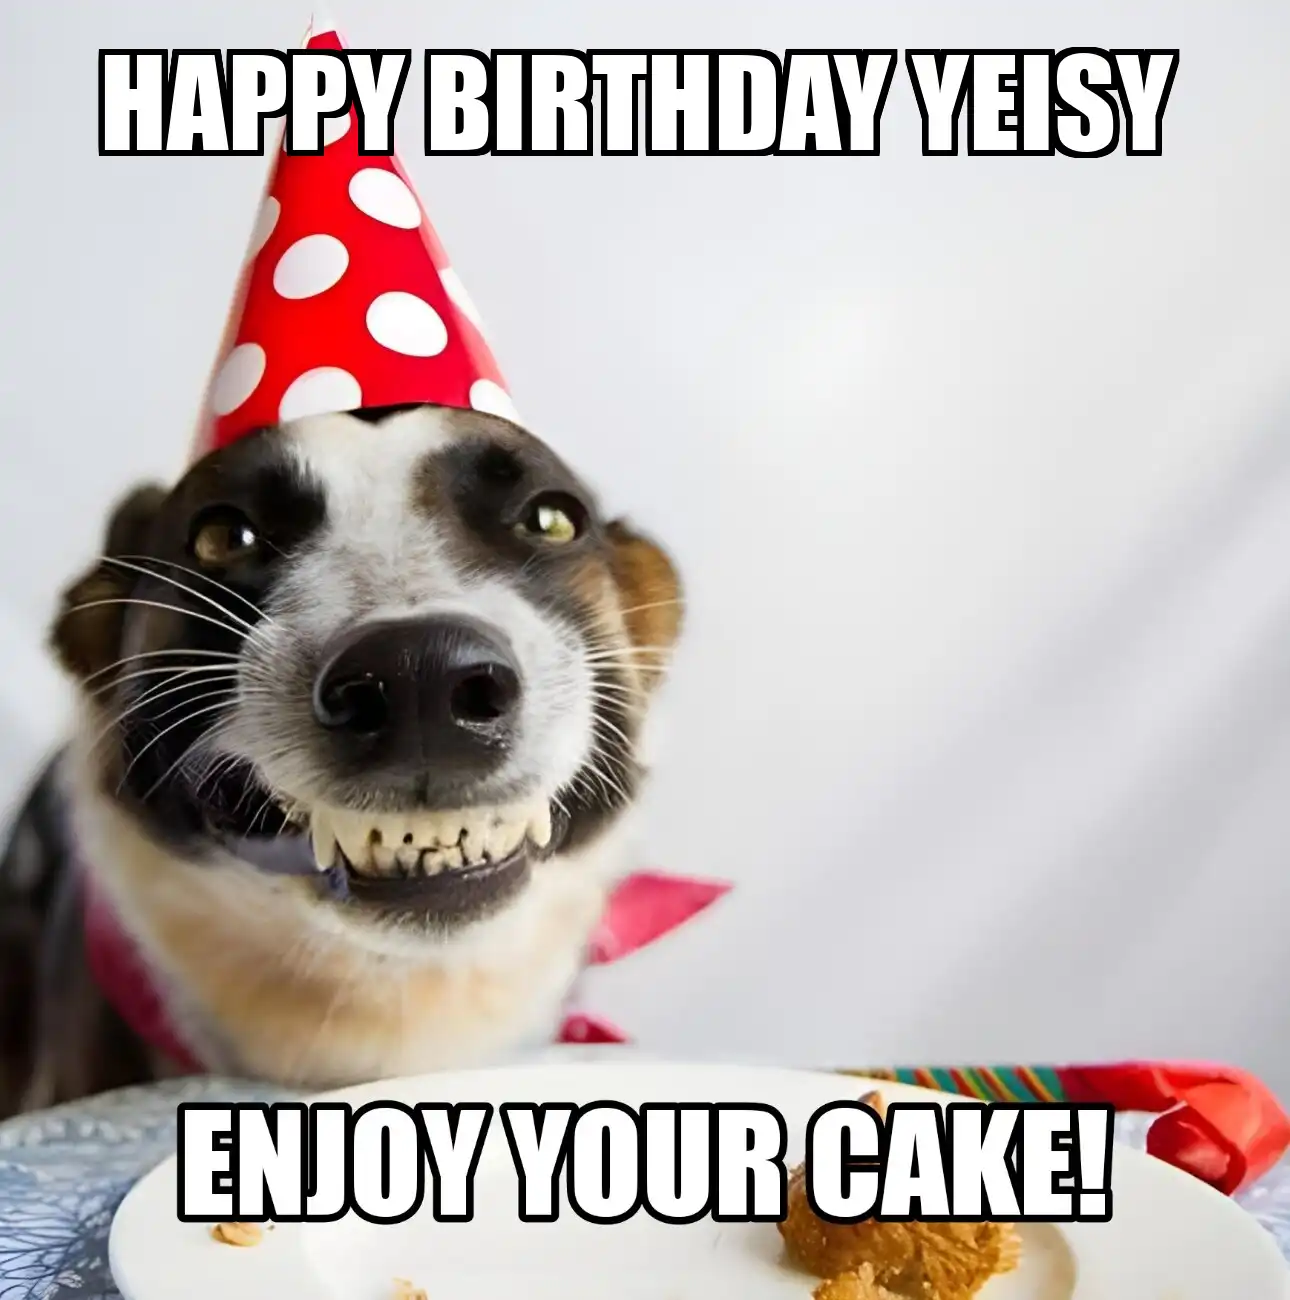 Happy Birthday Yeisy Enjoy Your Cake Dog Meme